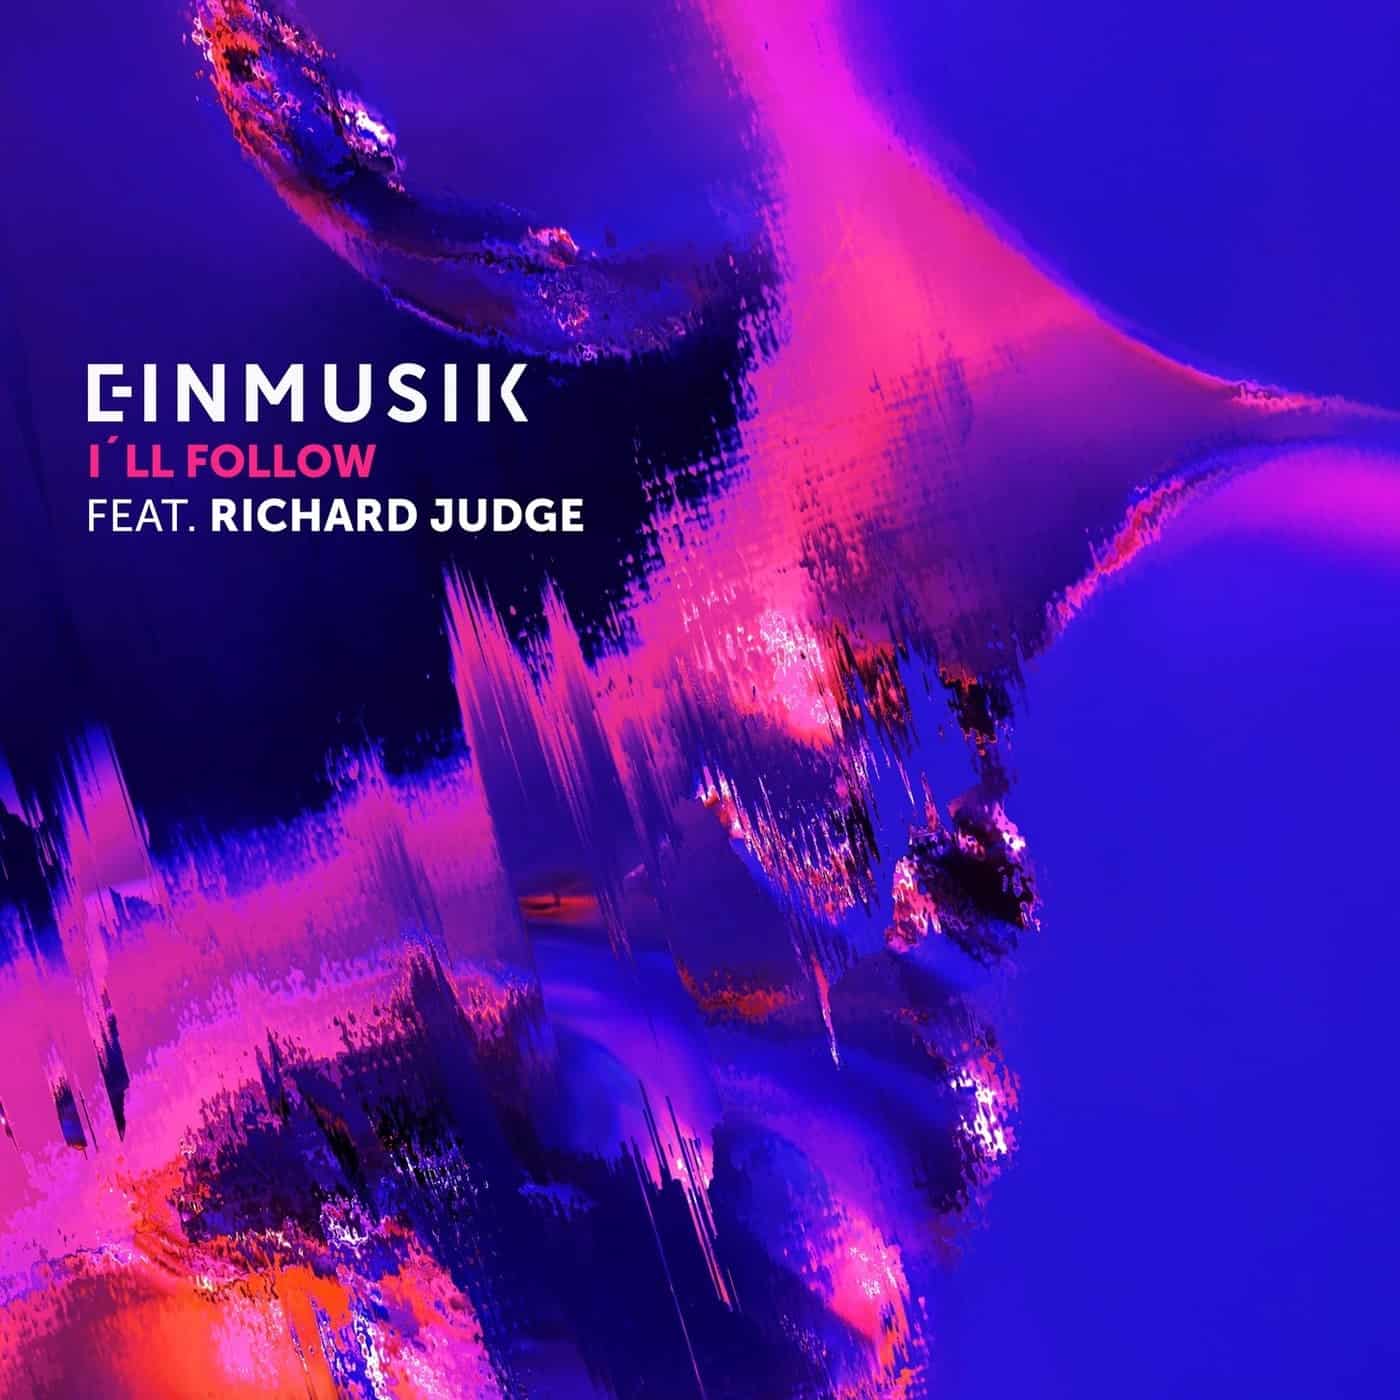 Download Einmusik, Richard Judge - I'll Follow on Electrobuzz